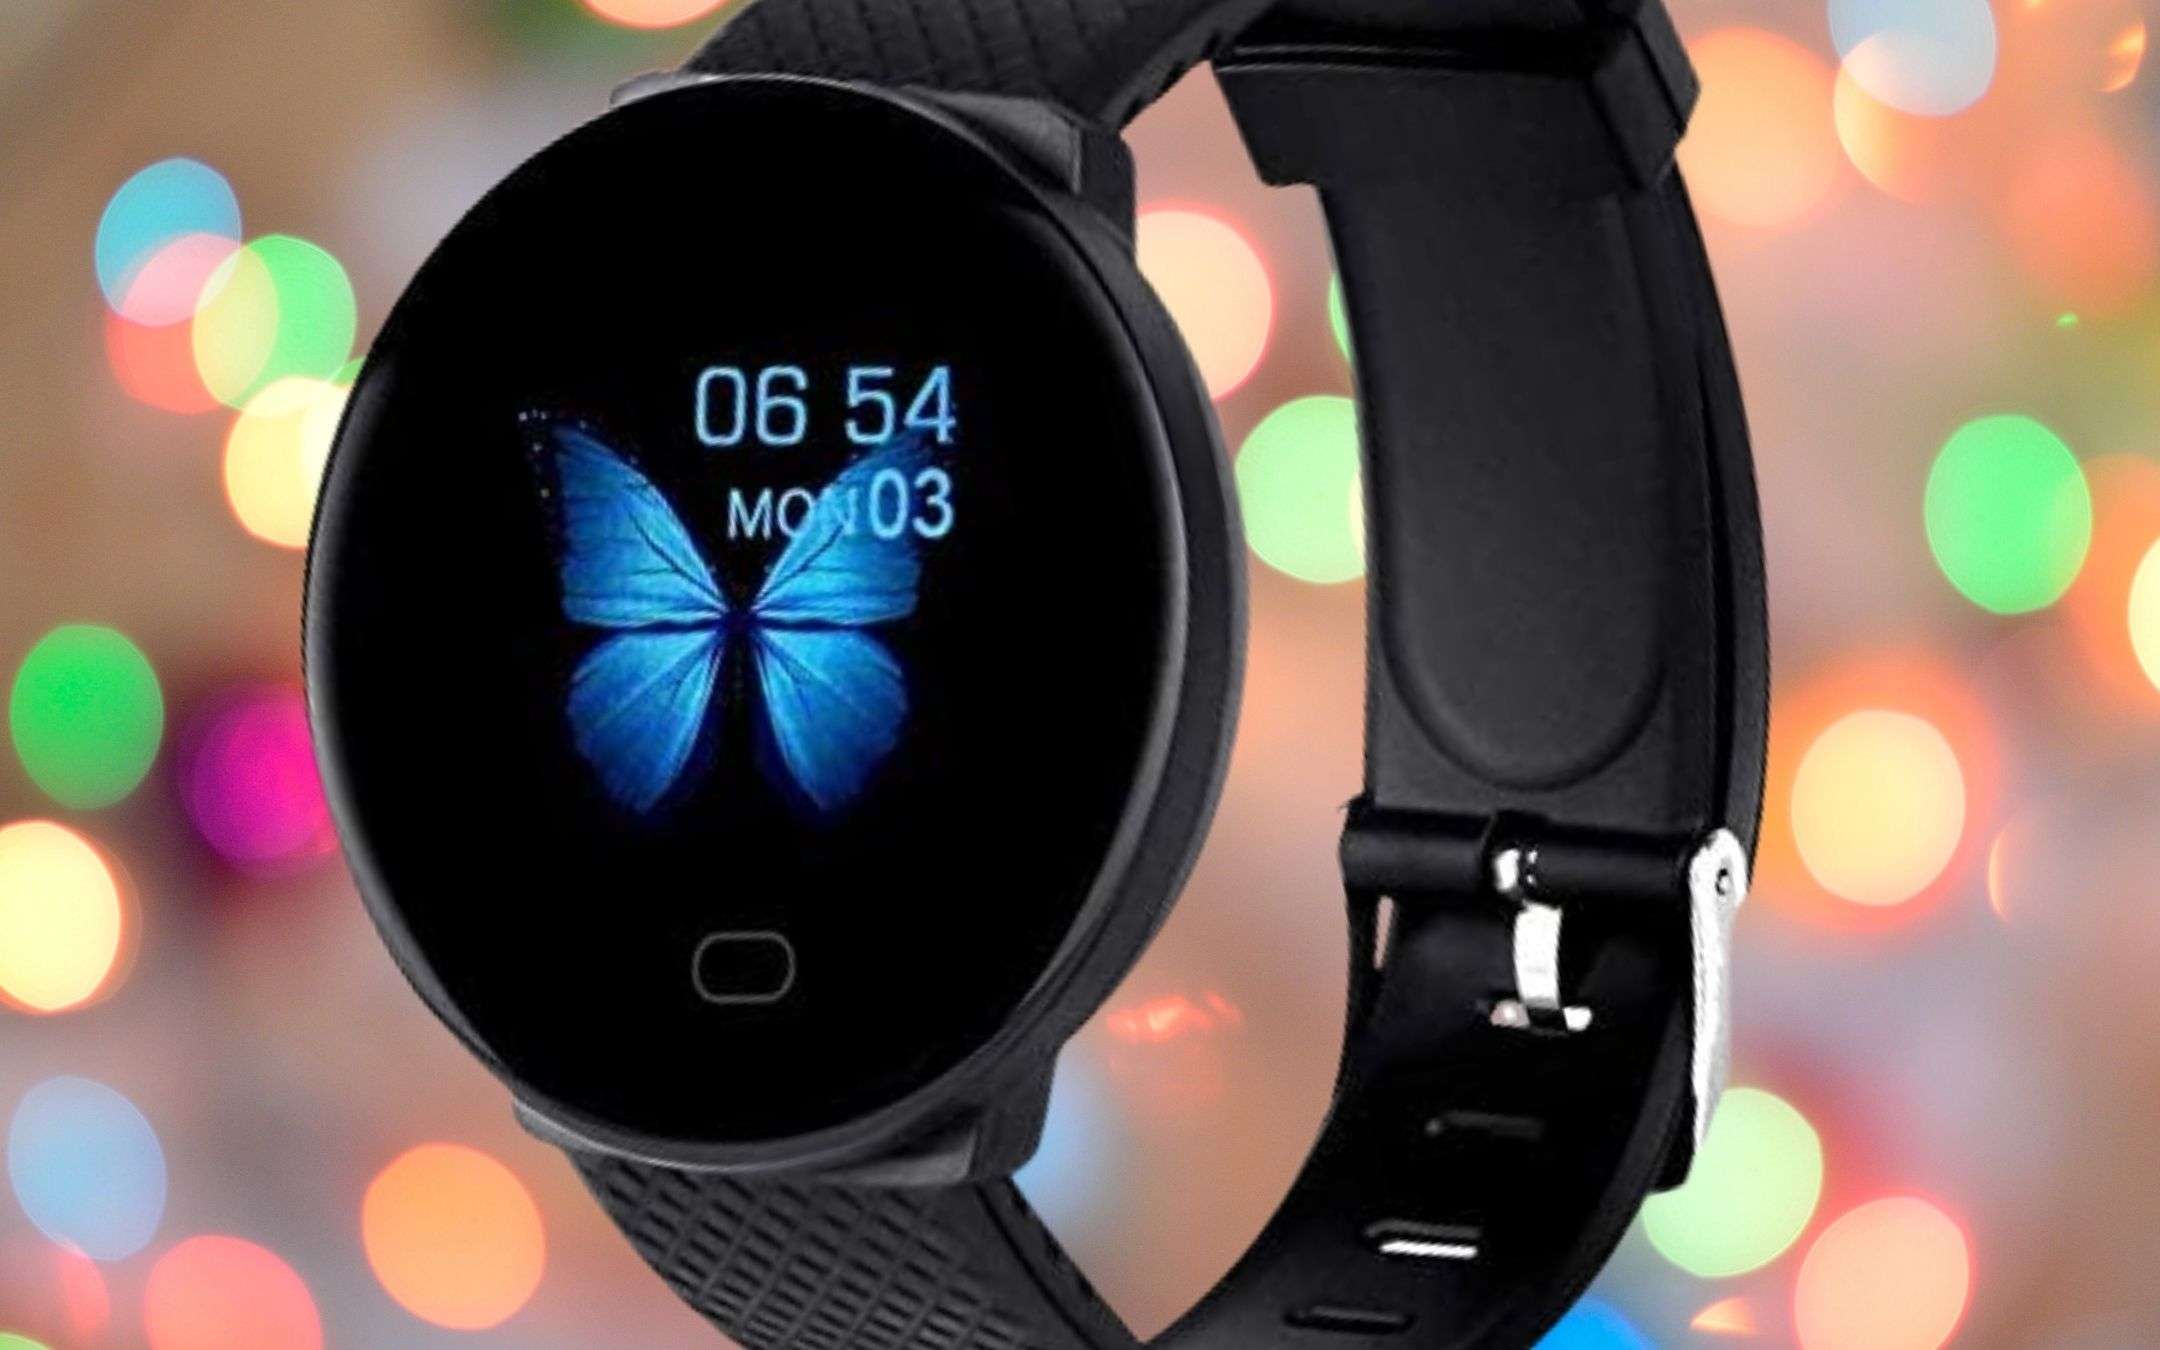 Smartwatch, Amazon: prezzo magico per Natale (20€)